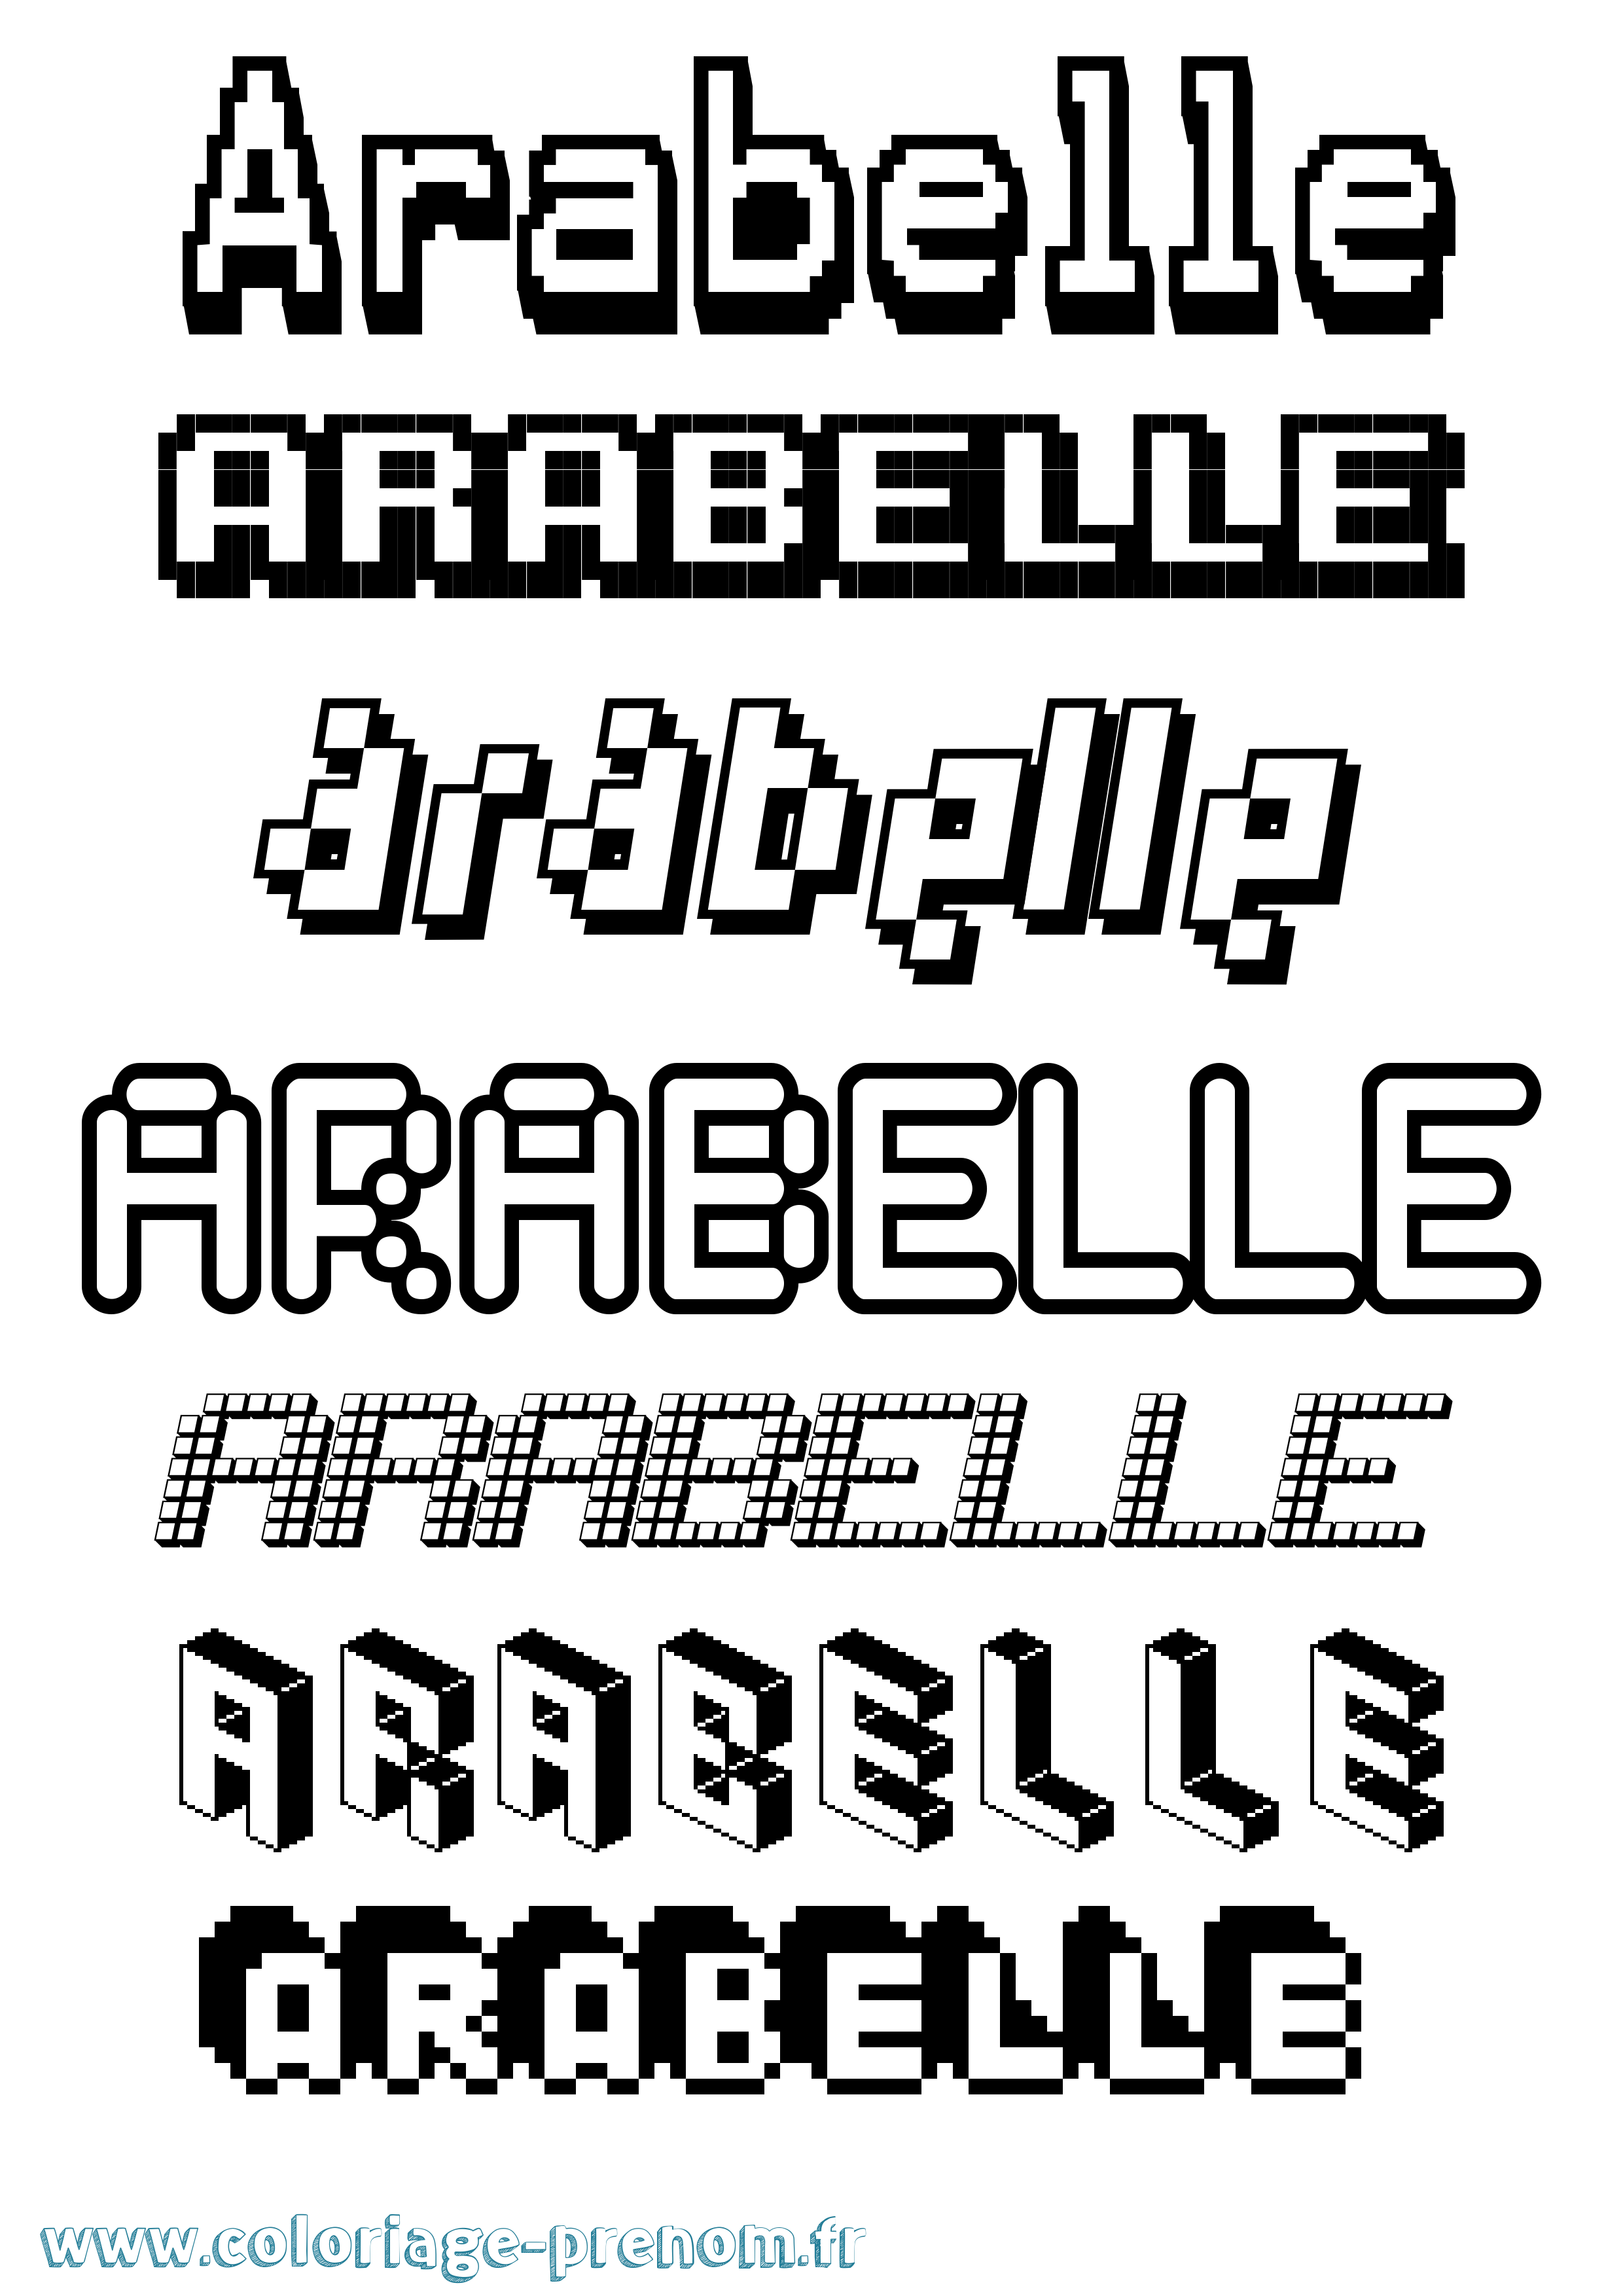 Coloriage prénom Arabelle Pixel